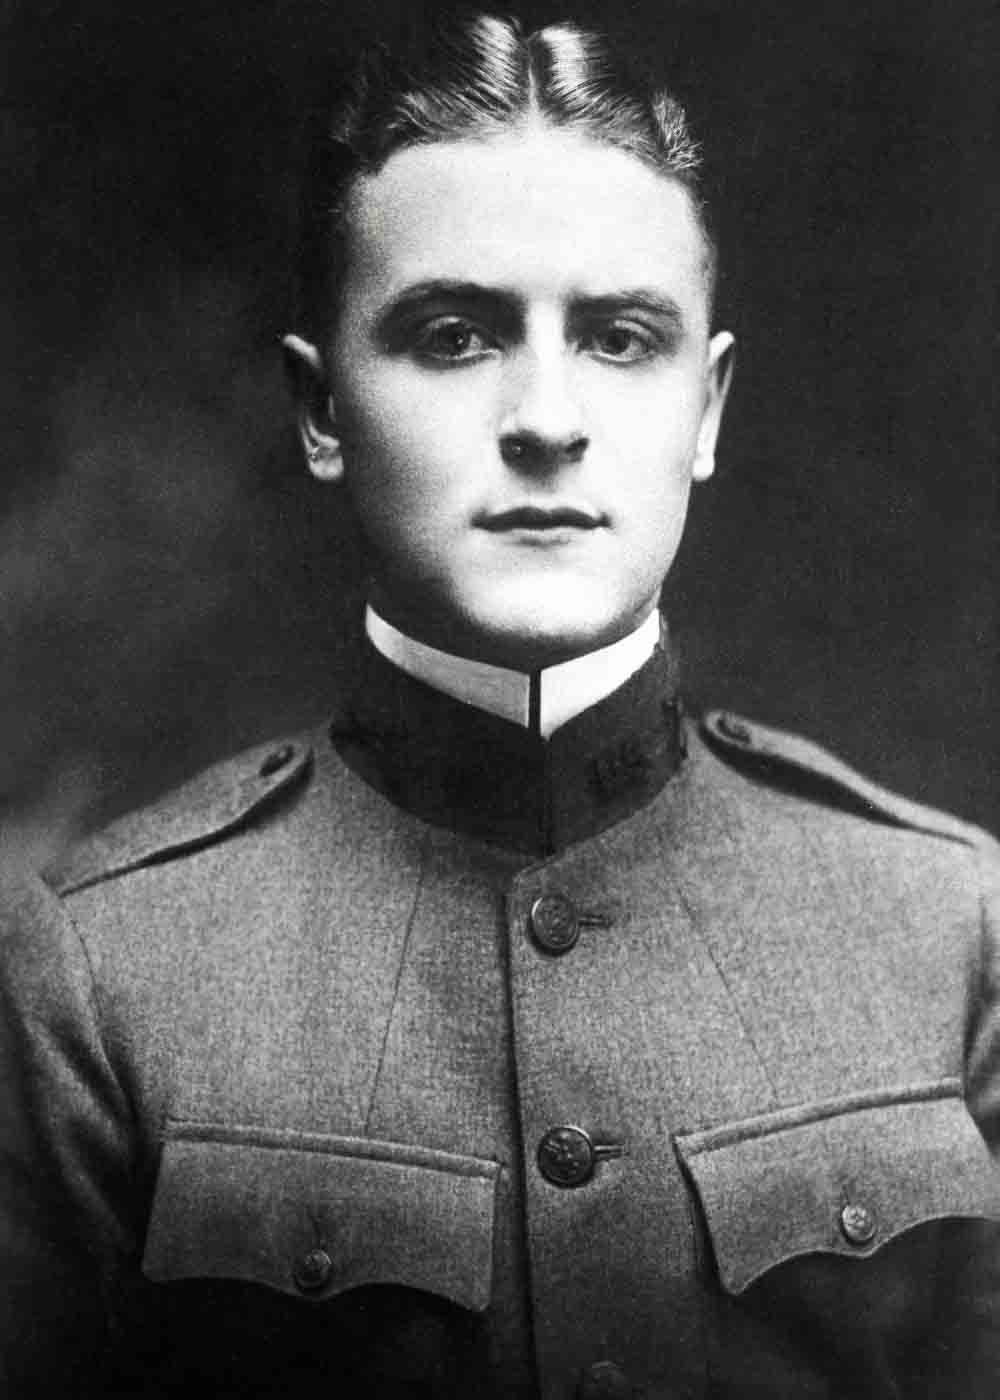 F Scott Fitzgerald uniform 1917